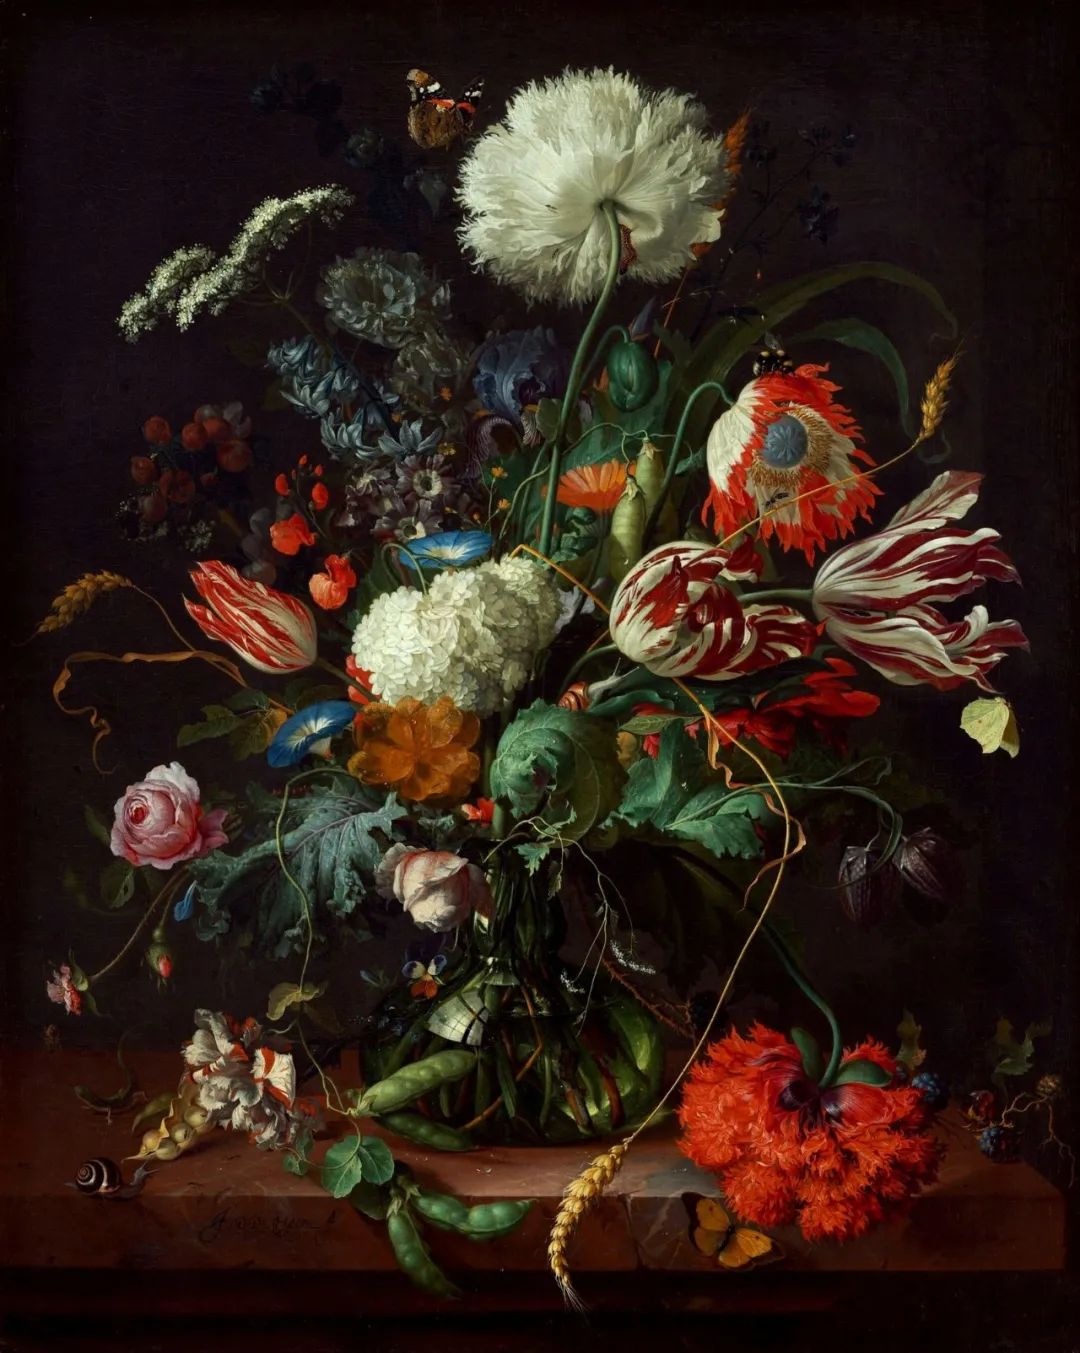 ボタニカルアート17世紀 花卉画 画集 17th-century Flower Painting - 洋書